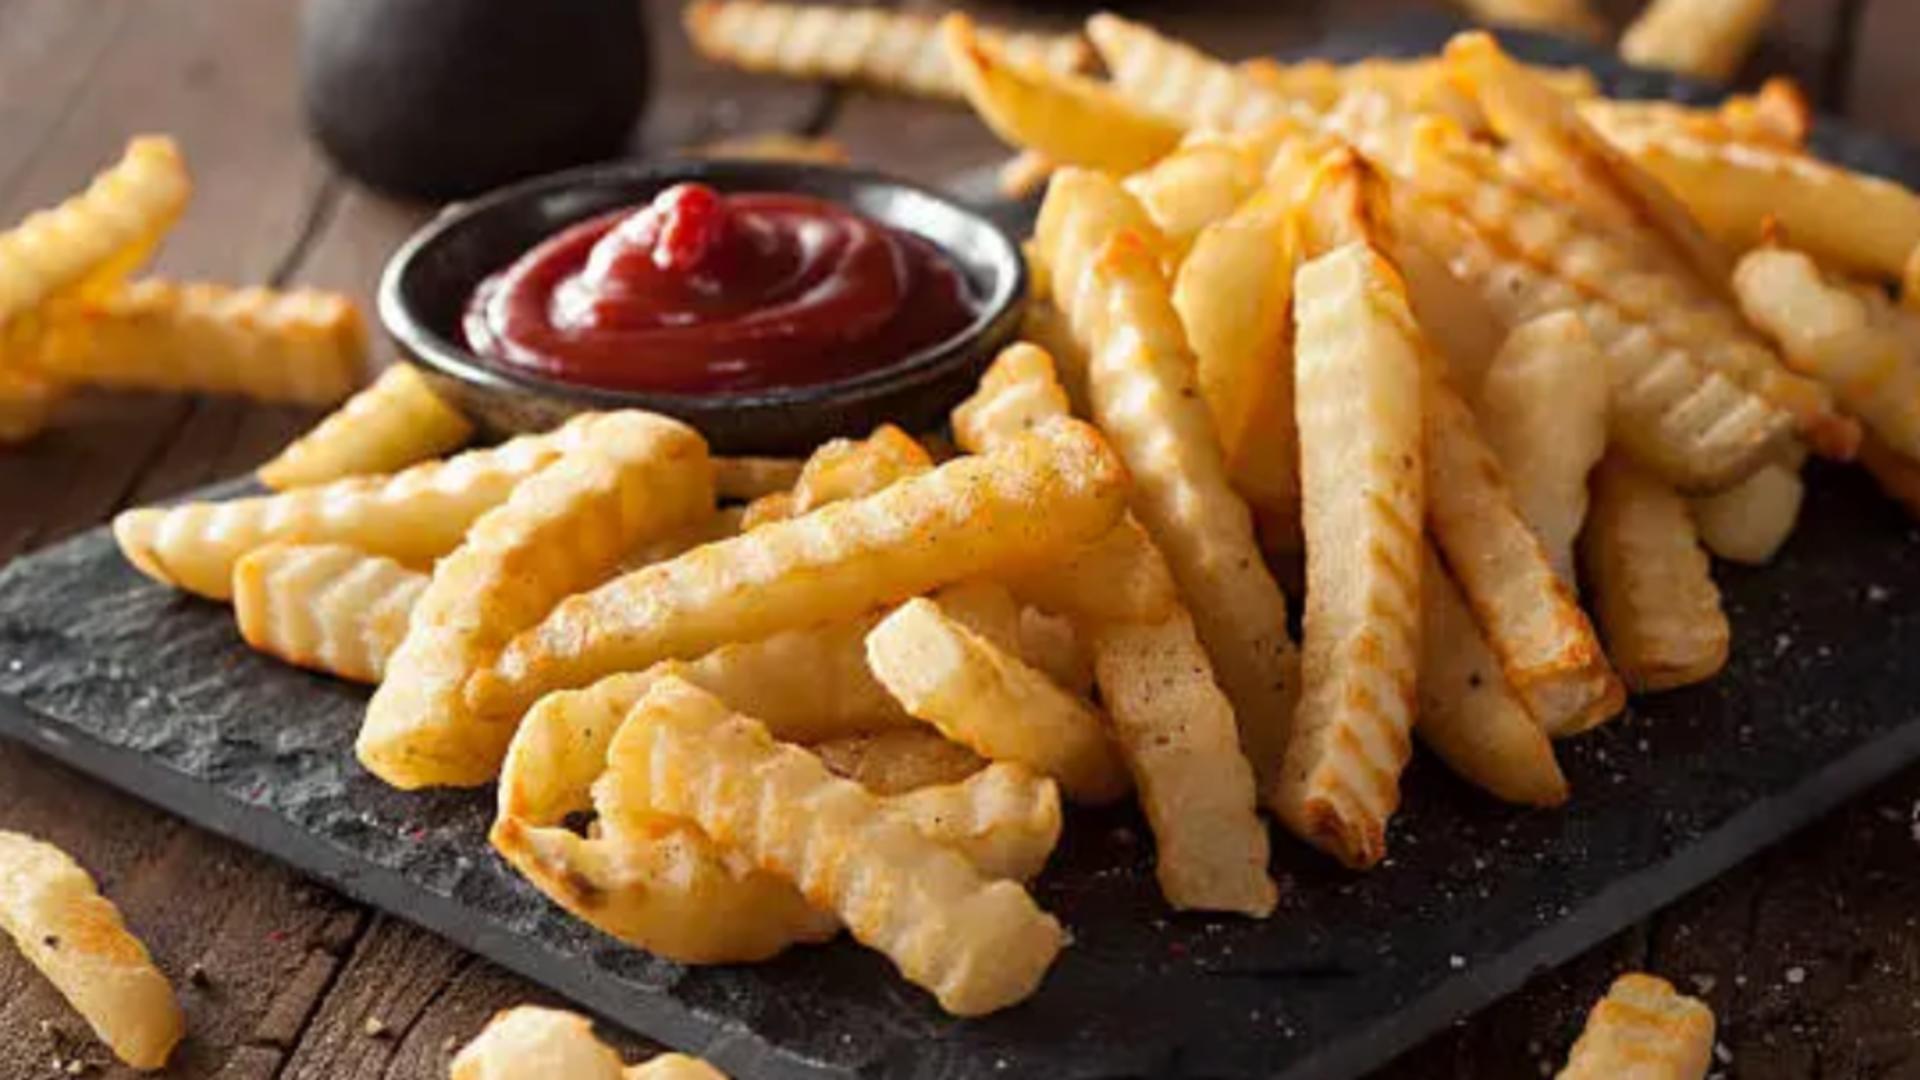 Cartofi prăjiţi cu ketchup. Adevărul neştiut despre această combinaţie - cât este de sănătoasă?